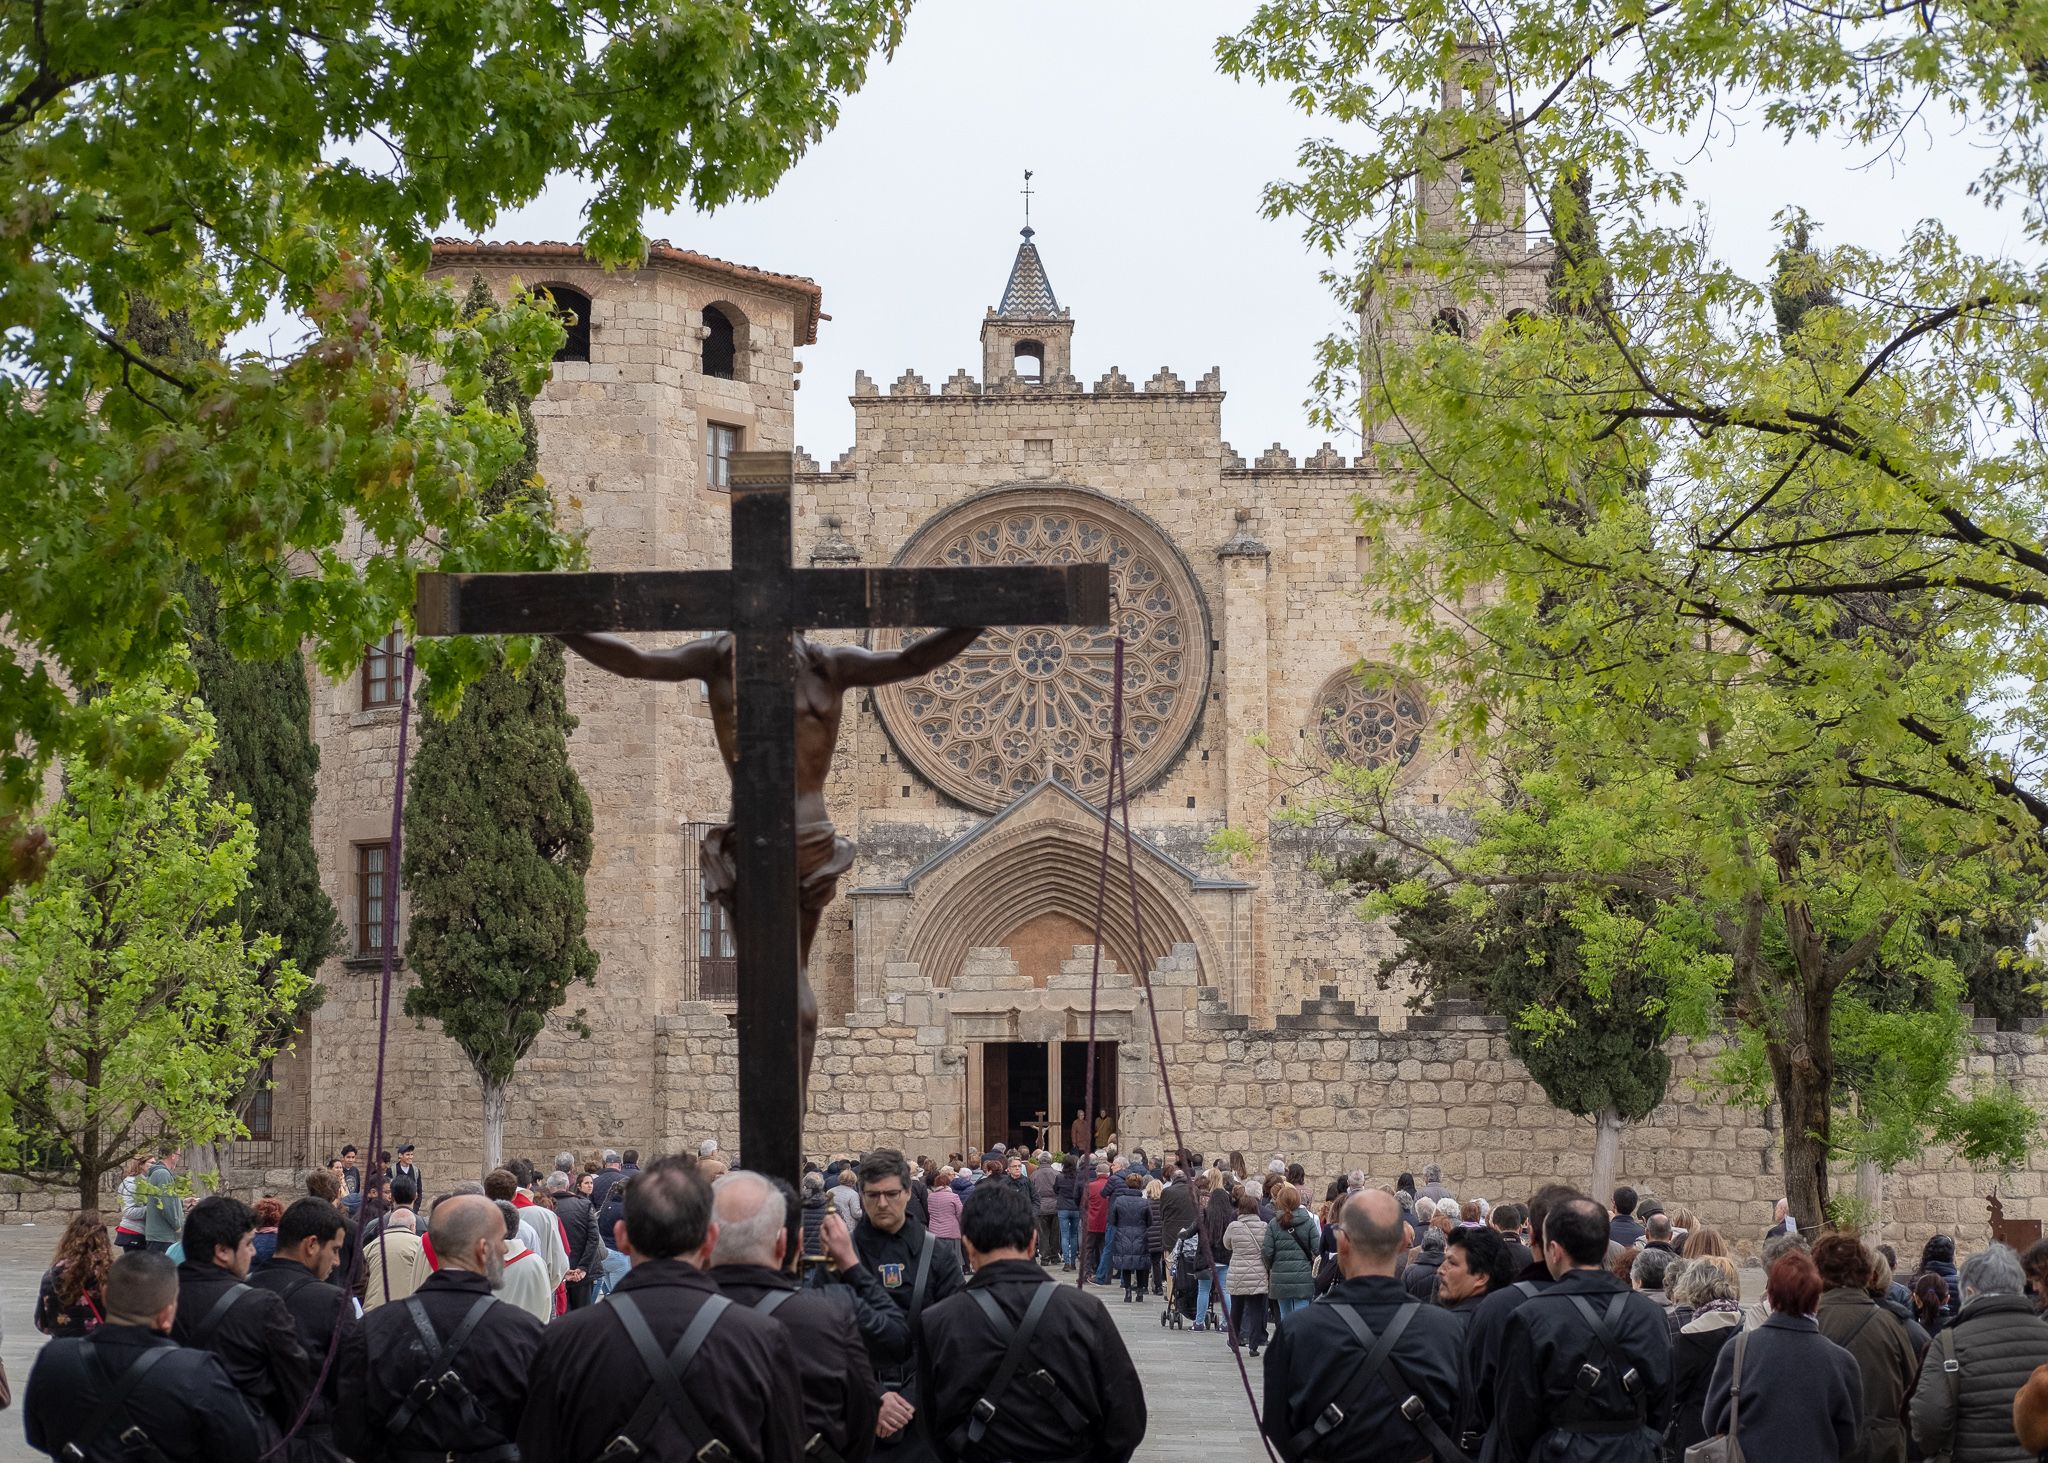 El Via Crucis i l'església del Monestir. FOTO: Ale Gómez